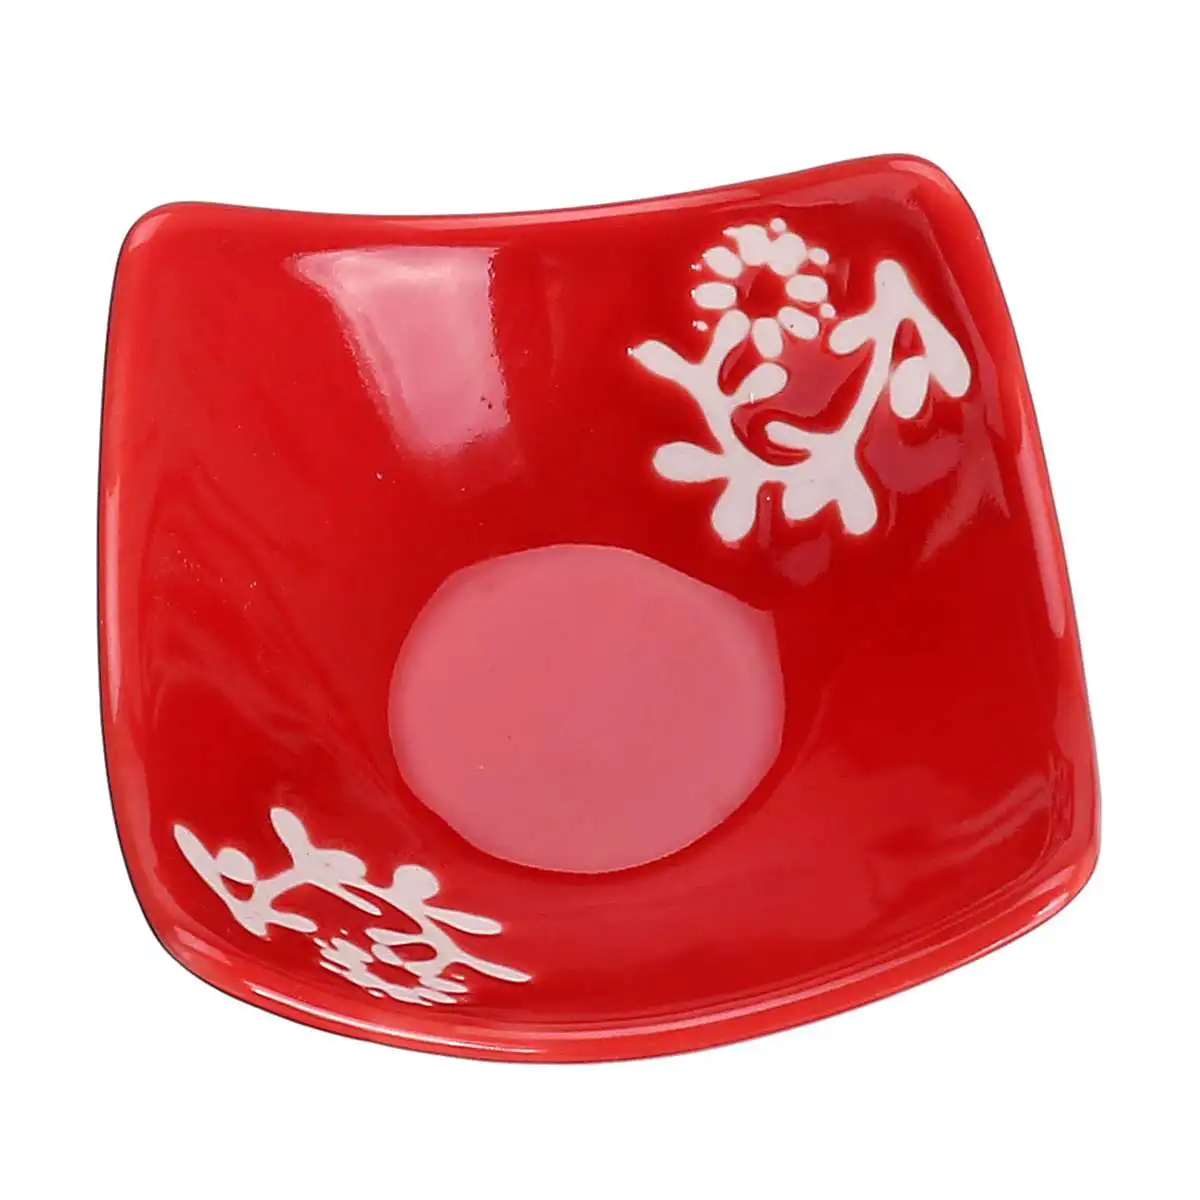 Красный зеленый китайский стиль керамическая посуда подарки Япония и Южная Корея посуда палочки кухонные принадлежности Суши набор для 2 человек